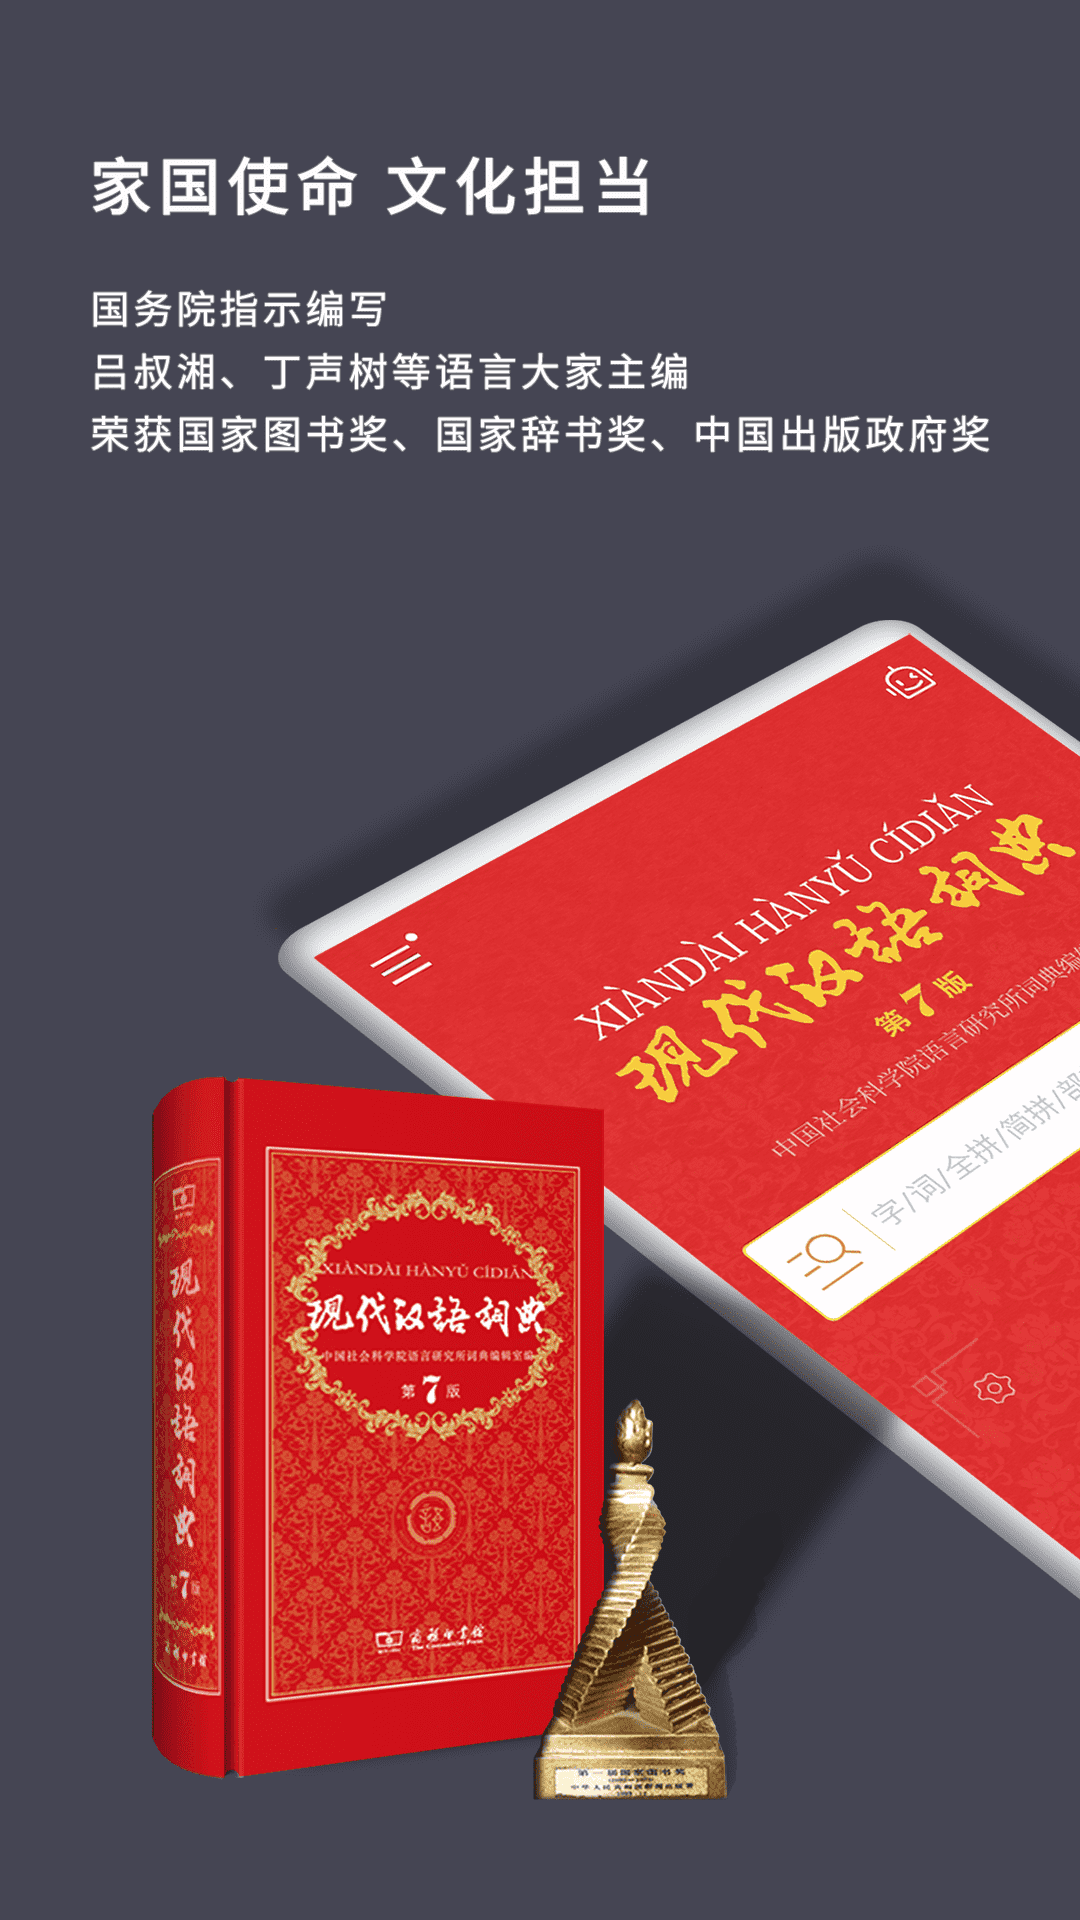 现代汉语词典最新版下载-现代汉语词典客户端下载